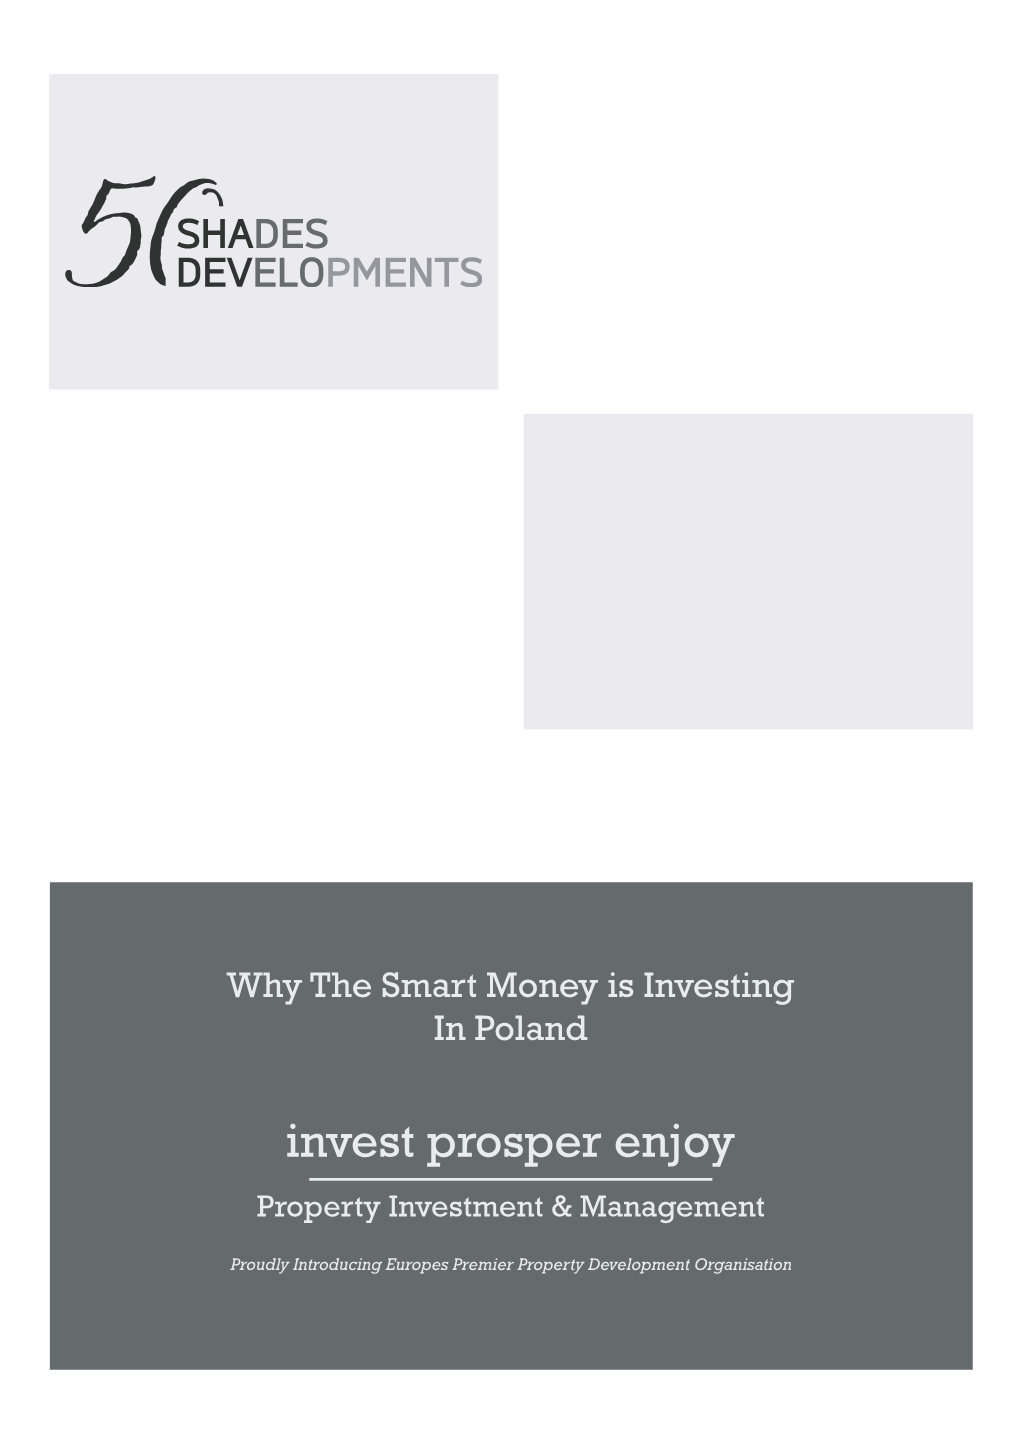 Invest Prosper Enjoy Property Investment & Management